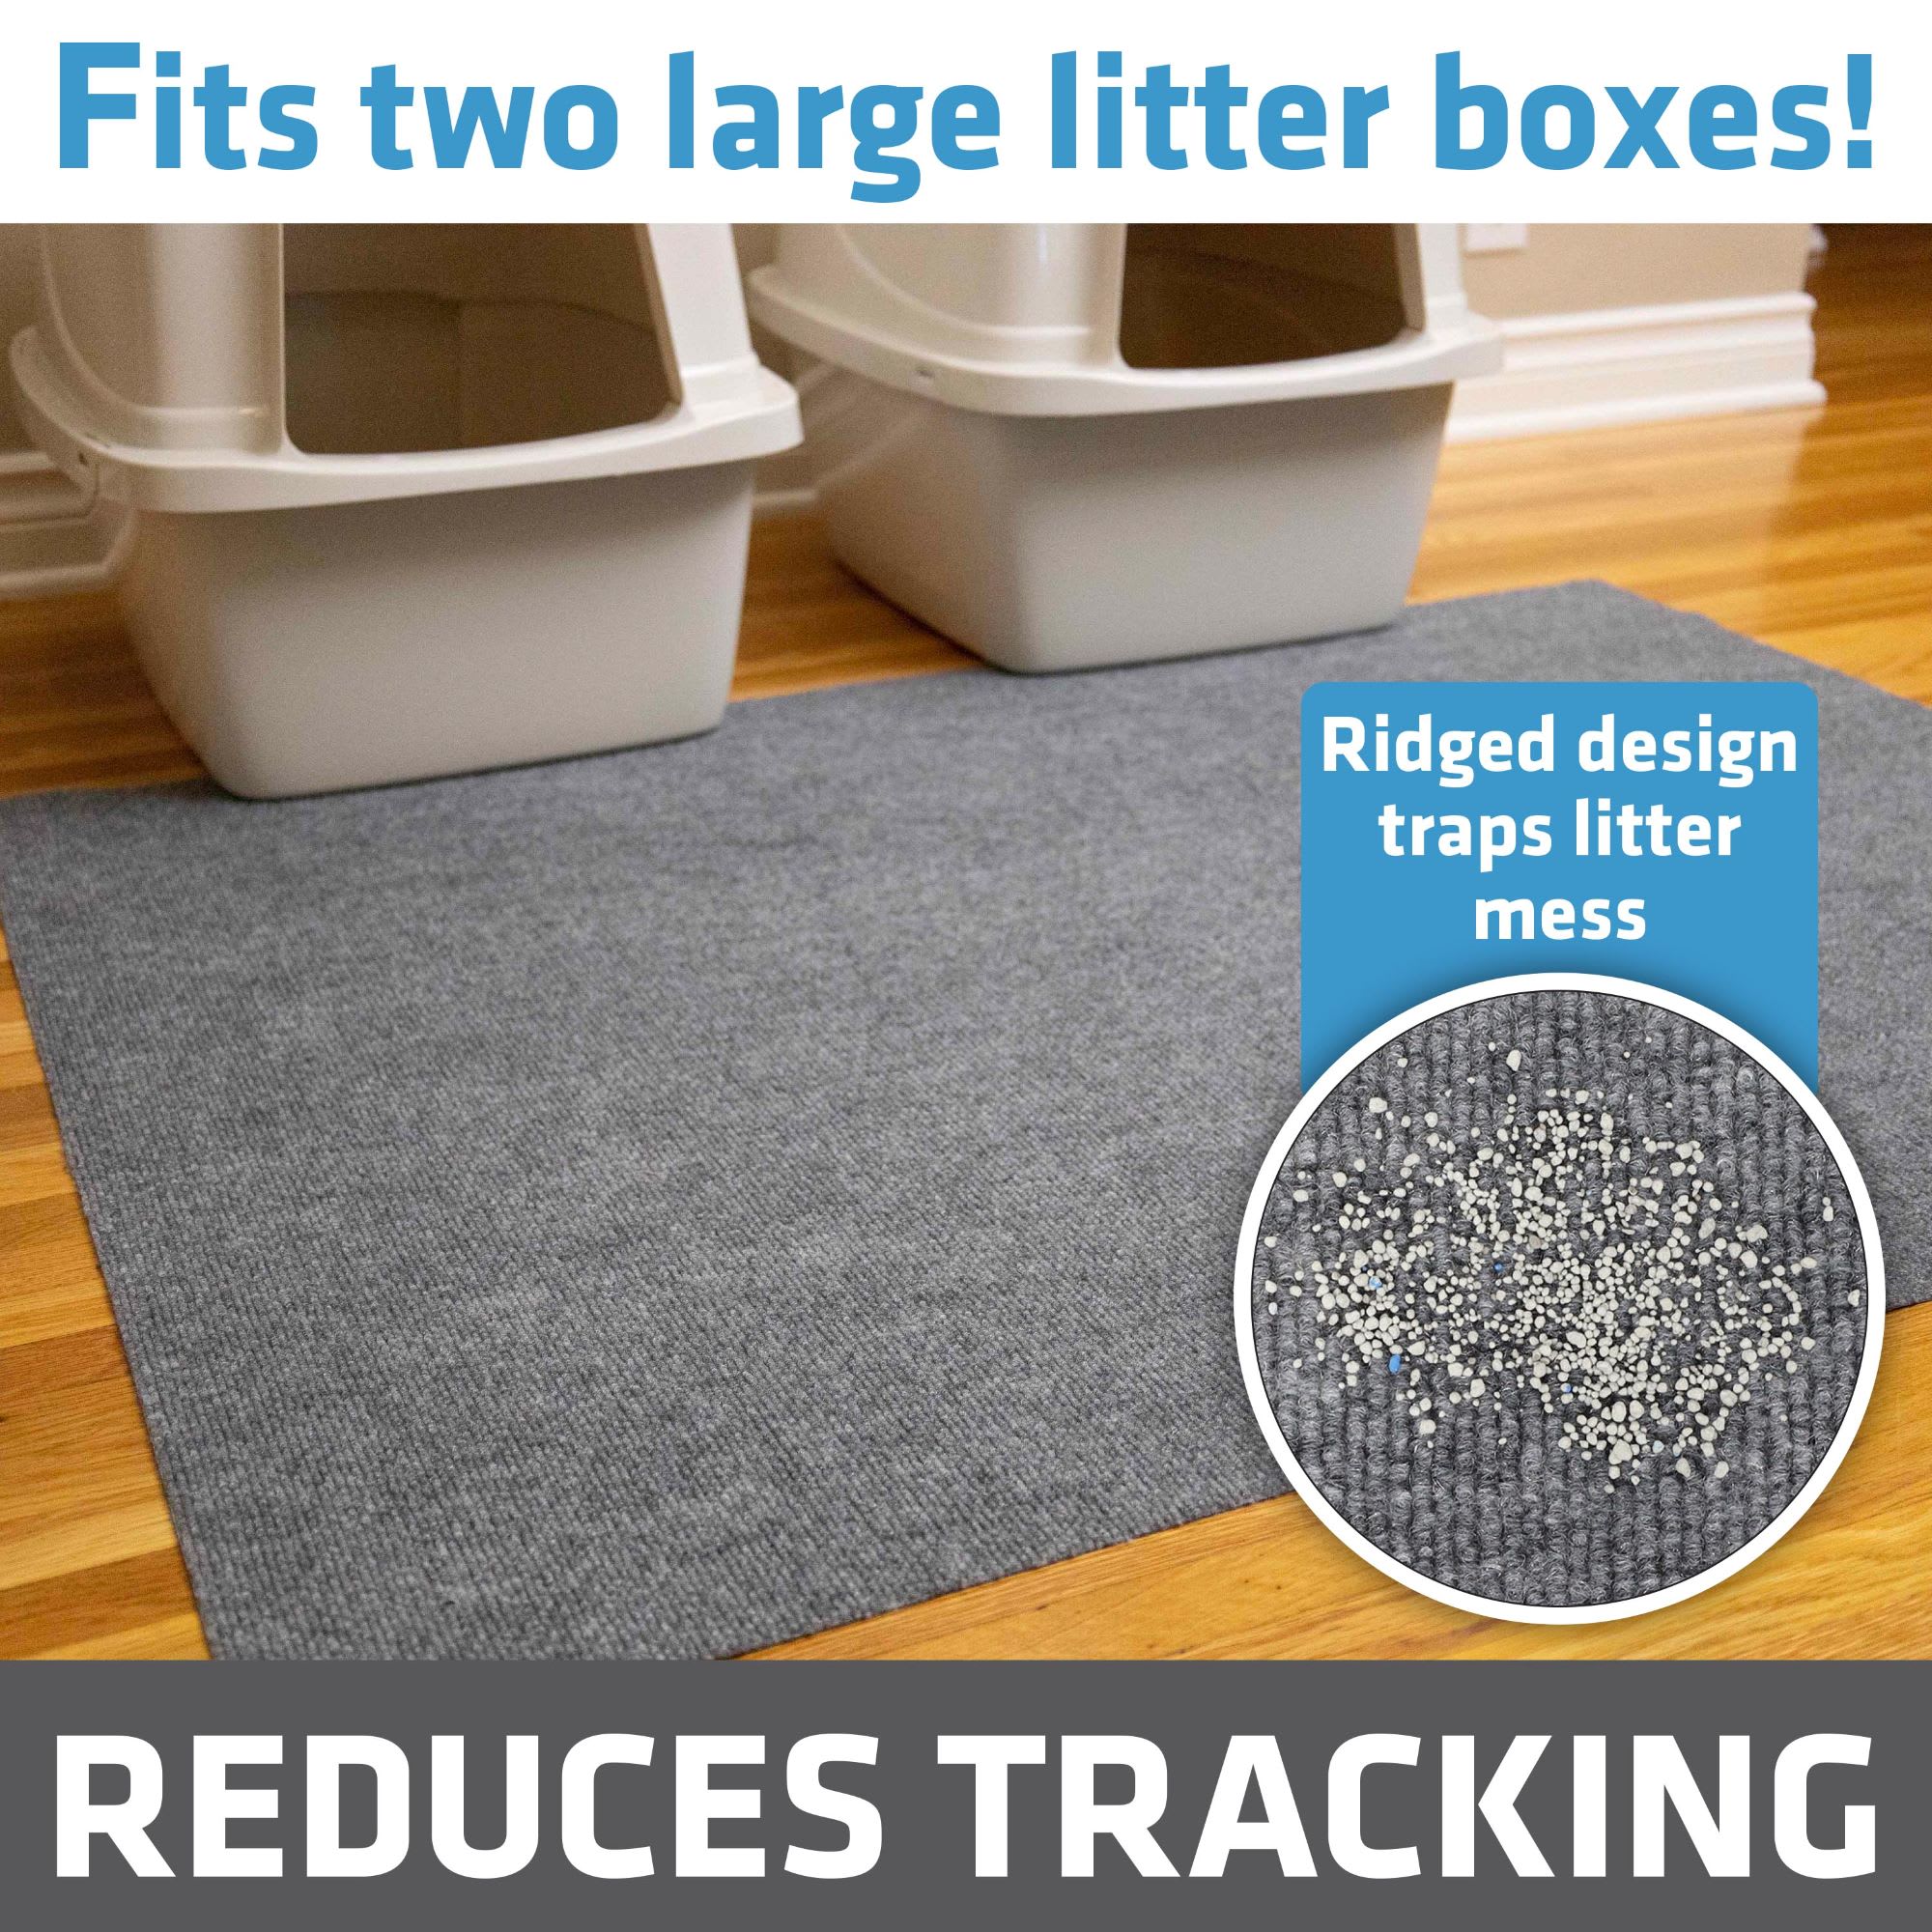 Drymate Cat Litter Mat, Tan Paw, 28 x 36